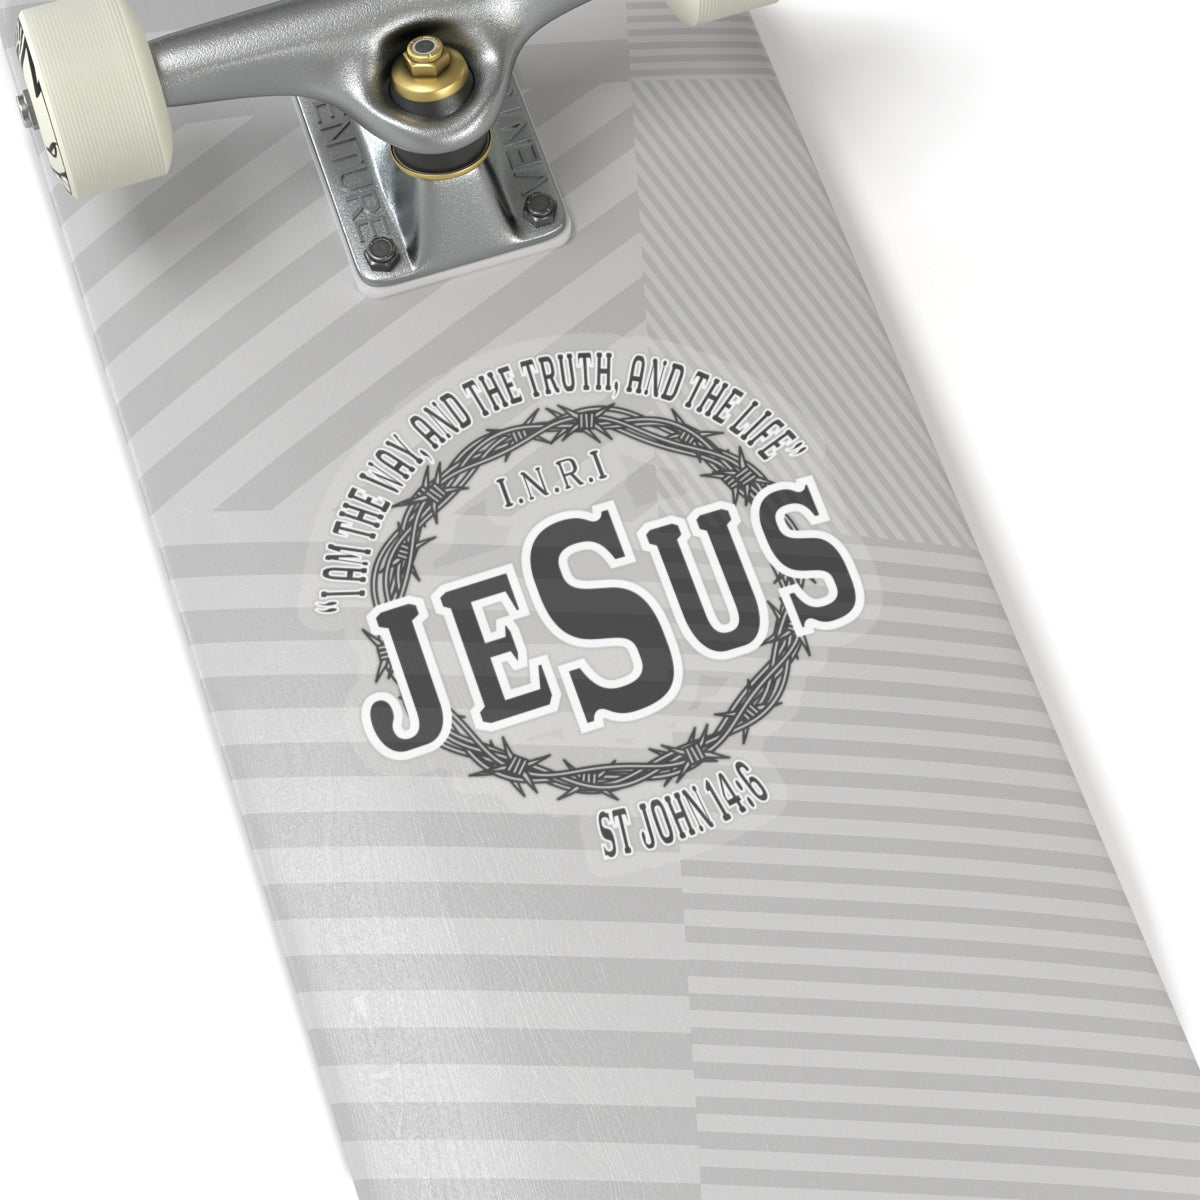 Jesus the Way John 14:6 Kiss-Cut Stickers